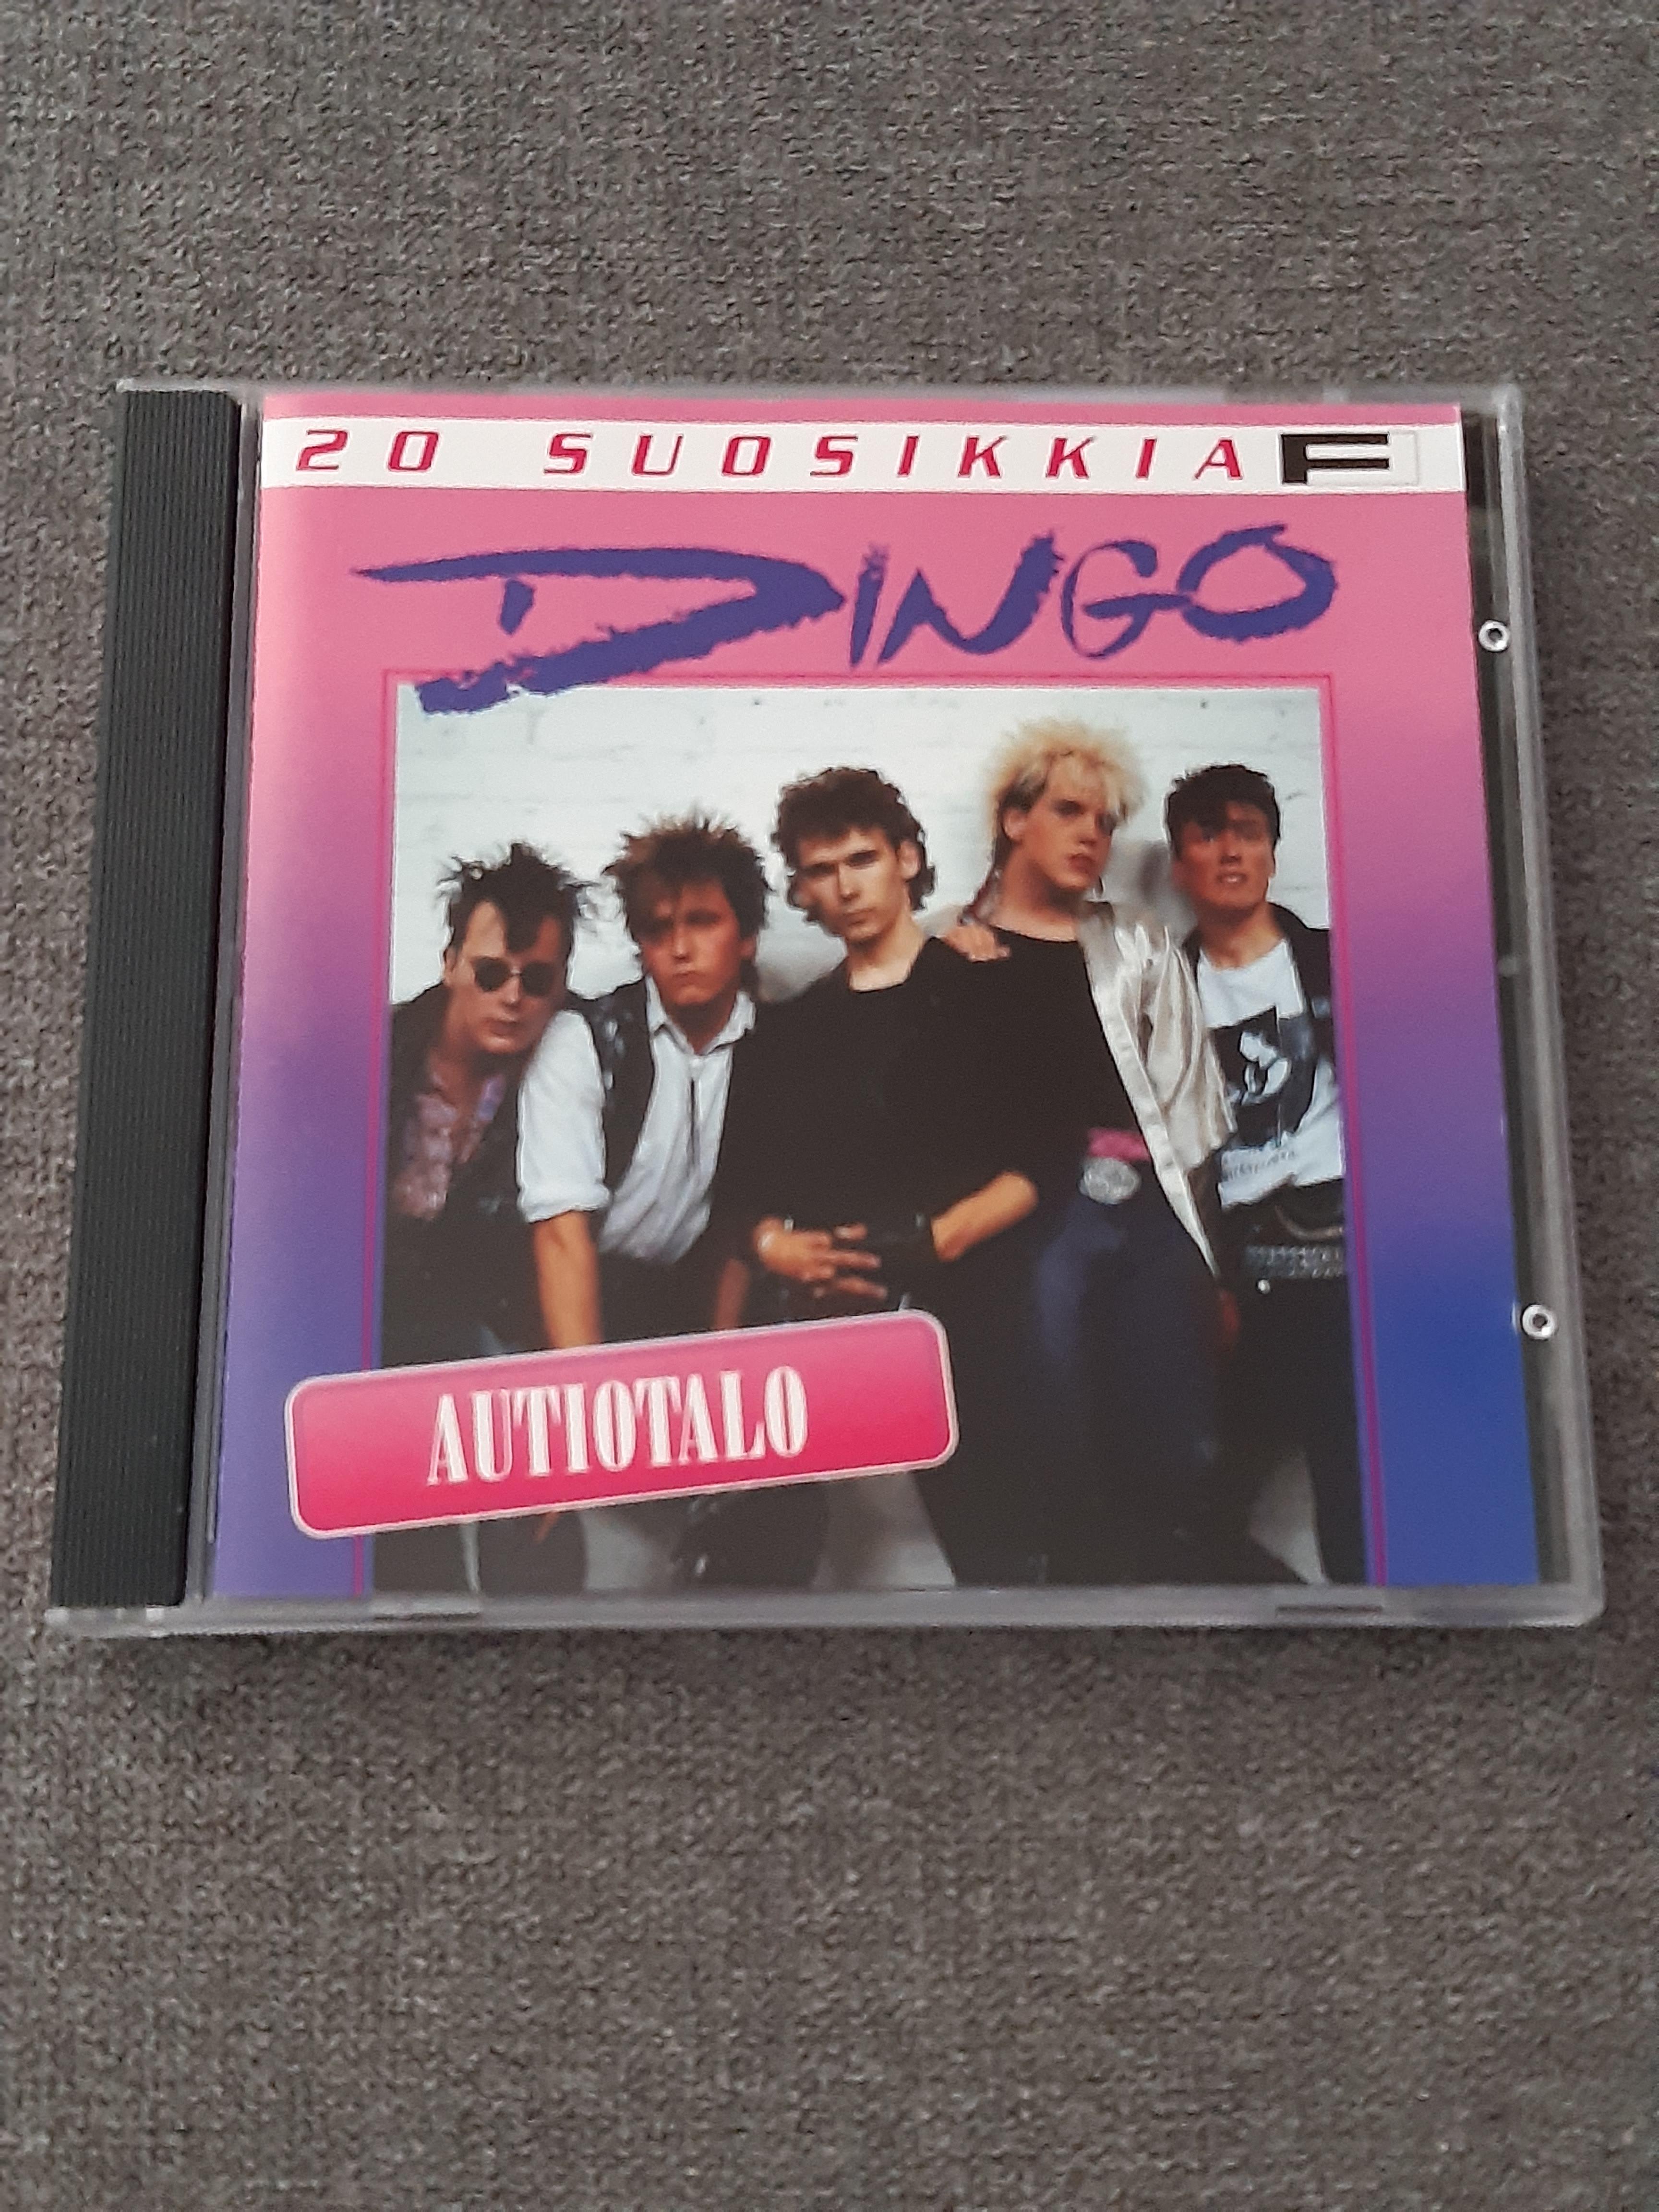 Dingo - Autiotalo, 20 Suosikkia - CD (käytetty)